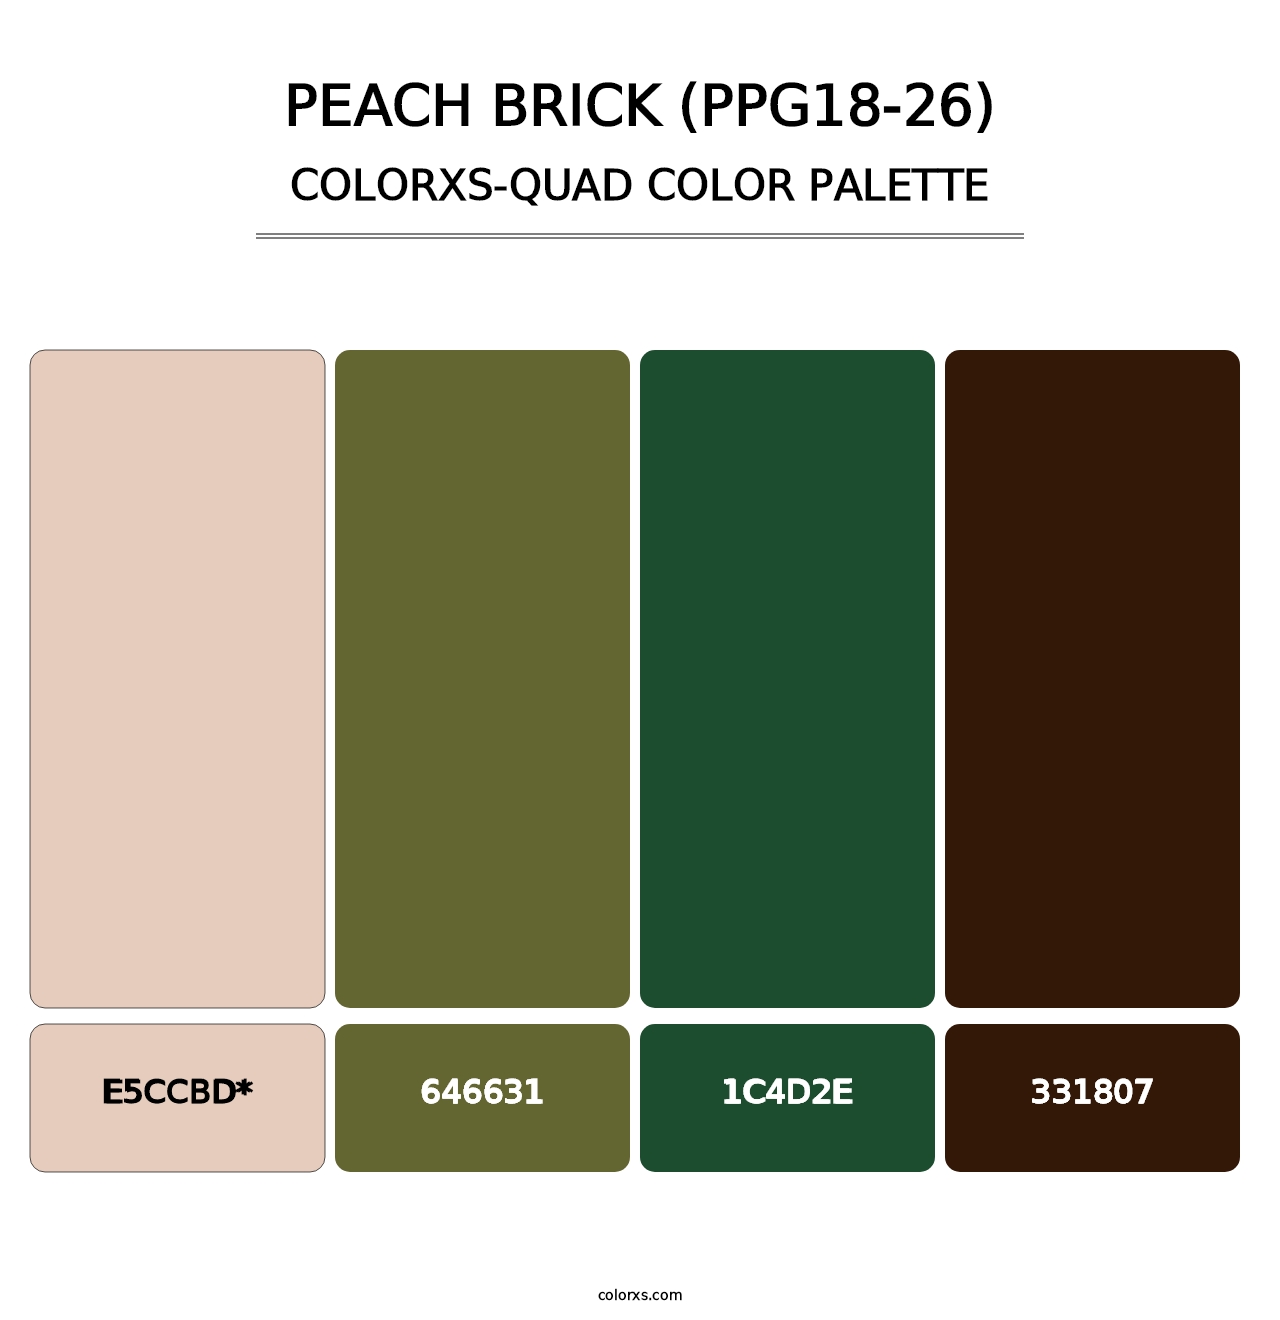 Peach Brick (PPG18-26) - Colorxs Quad Palette